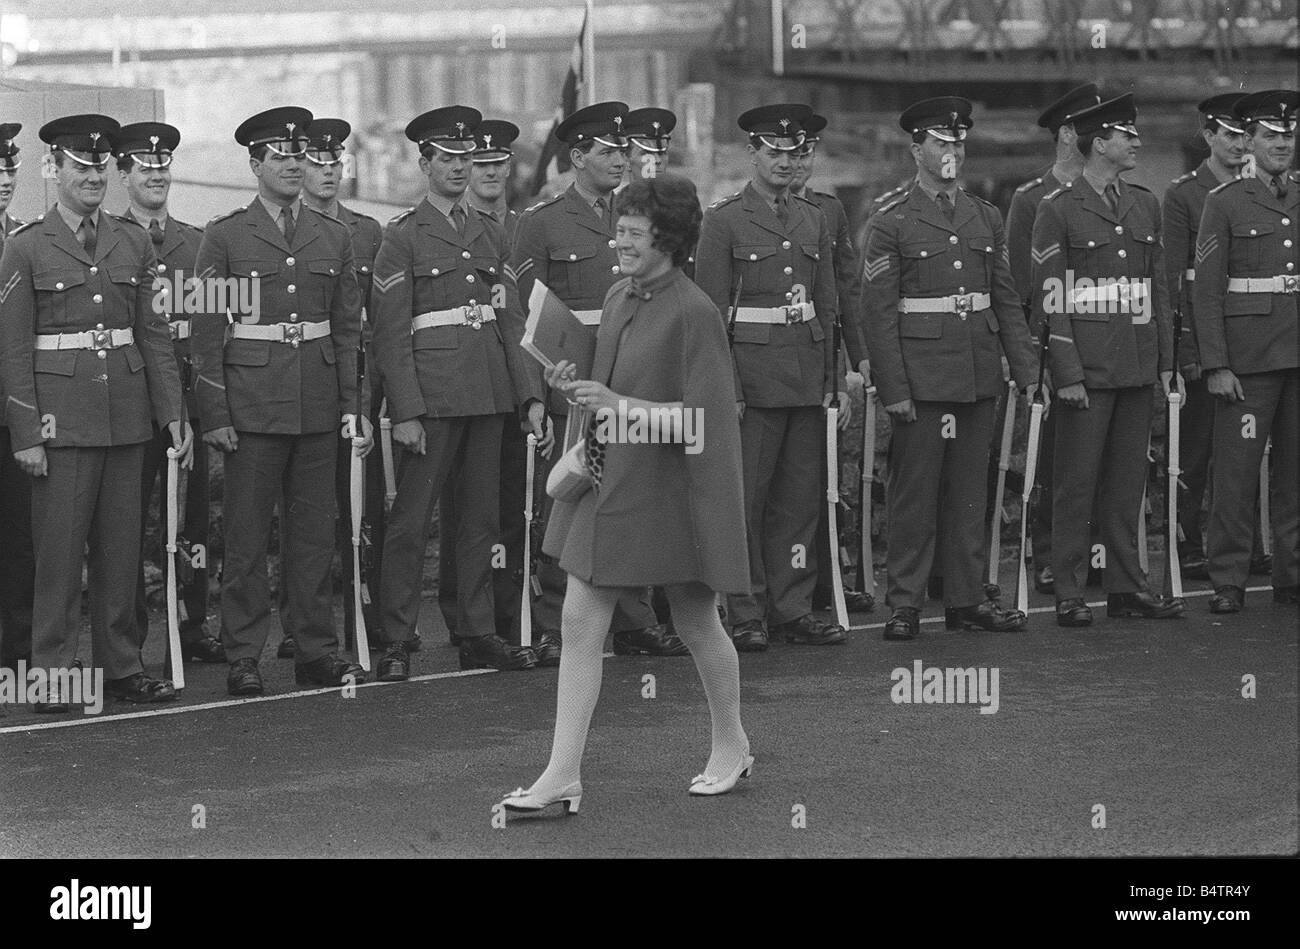 Investitur Proben Soldaten zu Lächeln, als eine Dame in einem Bergwerk Kleid und Mantel über ihre Parade-Linie geht bis 1 7 69 Z6518 14 der britischen Armee berühmt dafür s hohes Maß an Disziplin und unbeirrbarer Professionalität, die natürlich ist, bis eine junge Dame passiert die Gelegenheit vorbei war die Einsetzung von Prinz Charles als der Prinz von Wales in Caernarvon Castle Y2K lustige Y2K Royalty dtgu2 DTGU2 Stockfoto